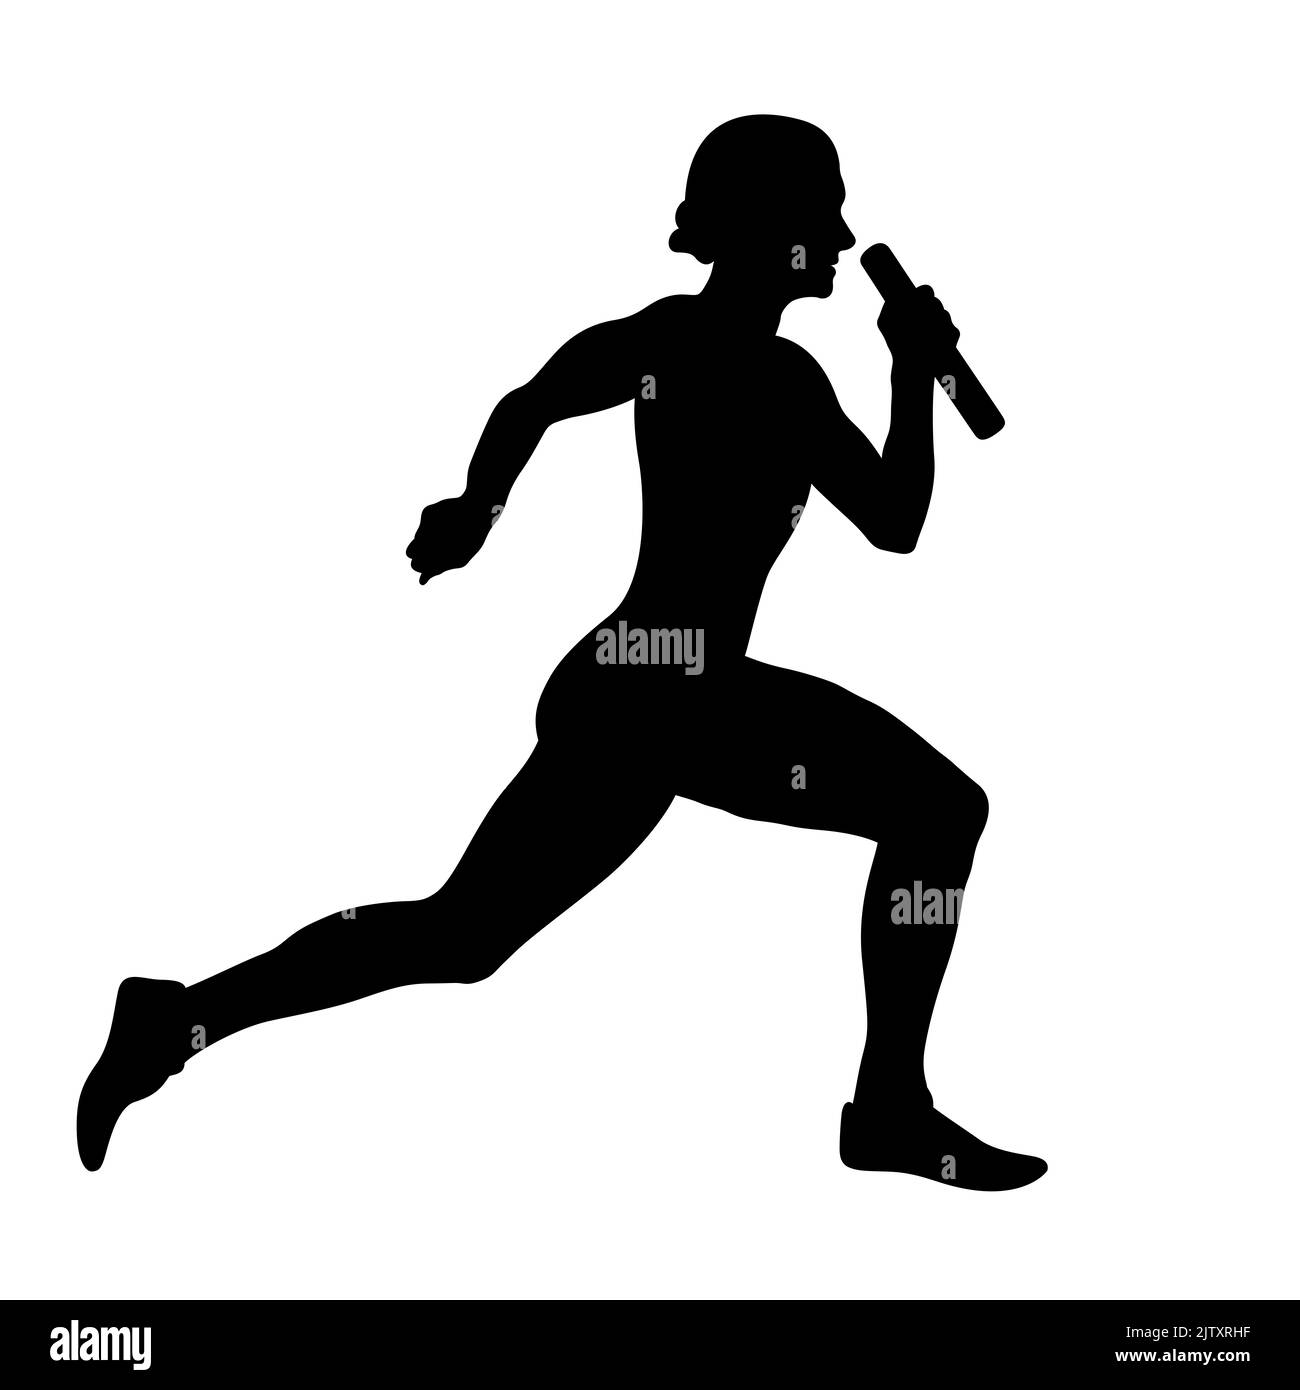 female runner running relay race black silhouette Stock Photo